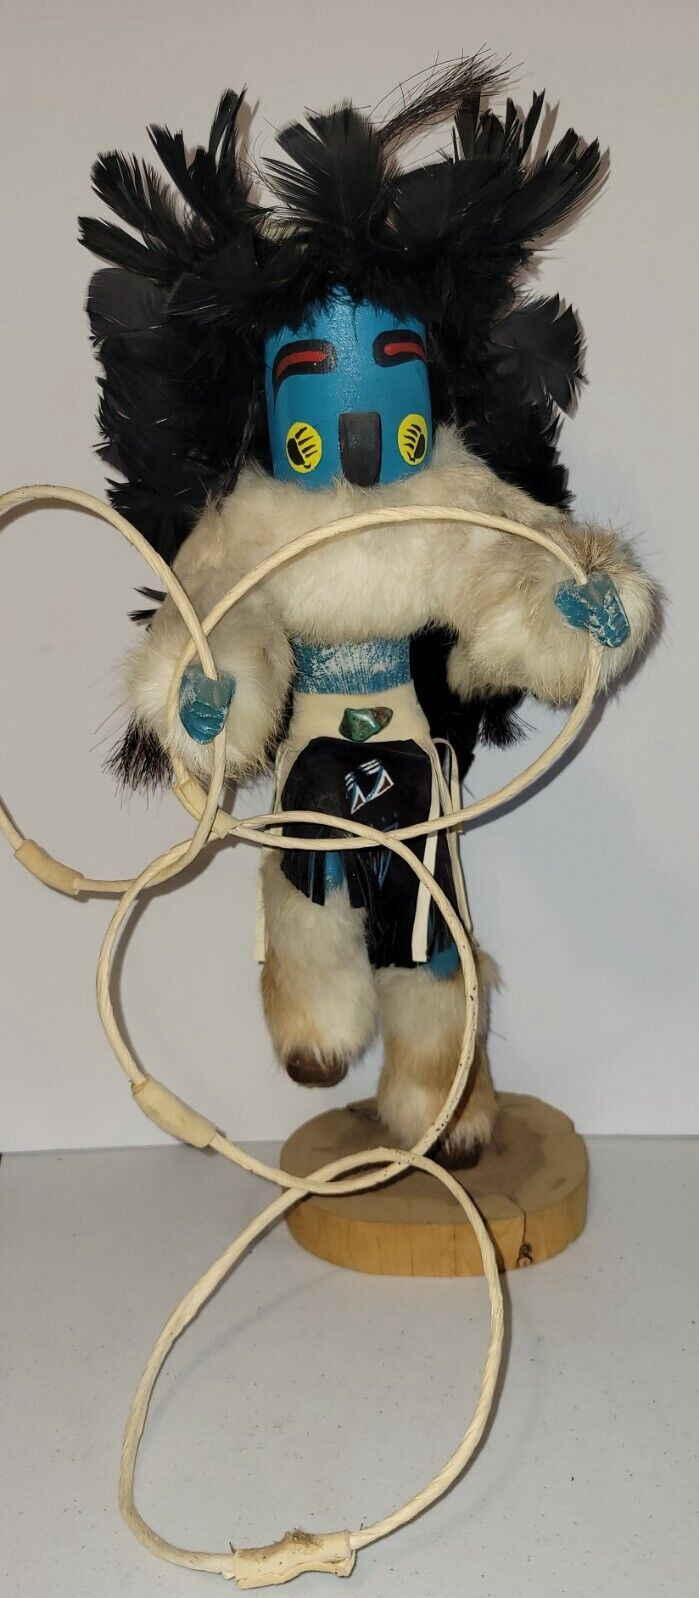 A hoop dancer Kachina doll